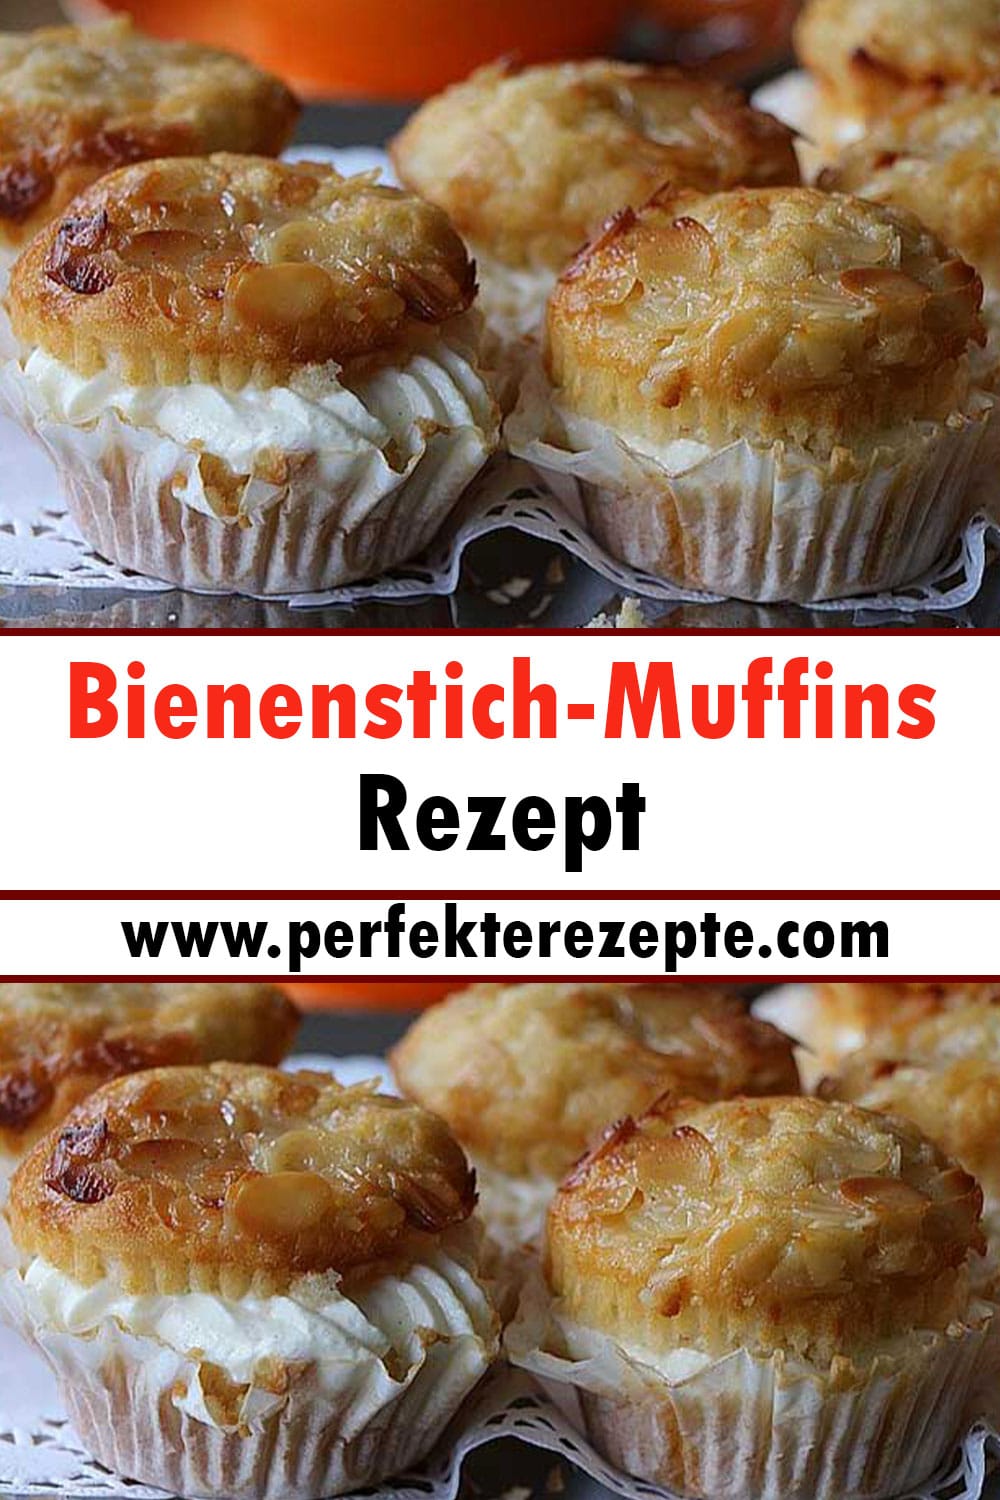 Bienenstich-Muffins Rezept